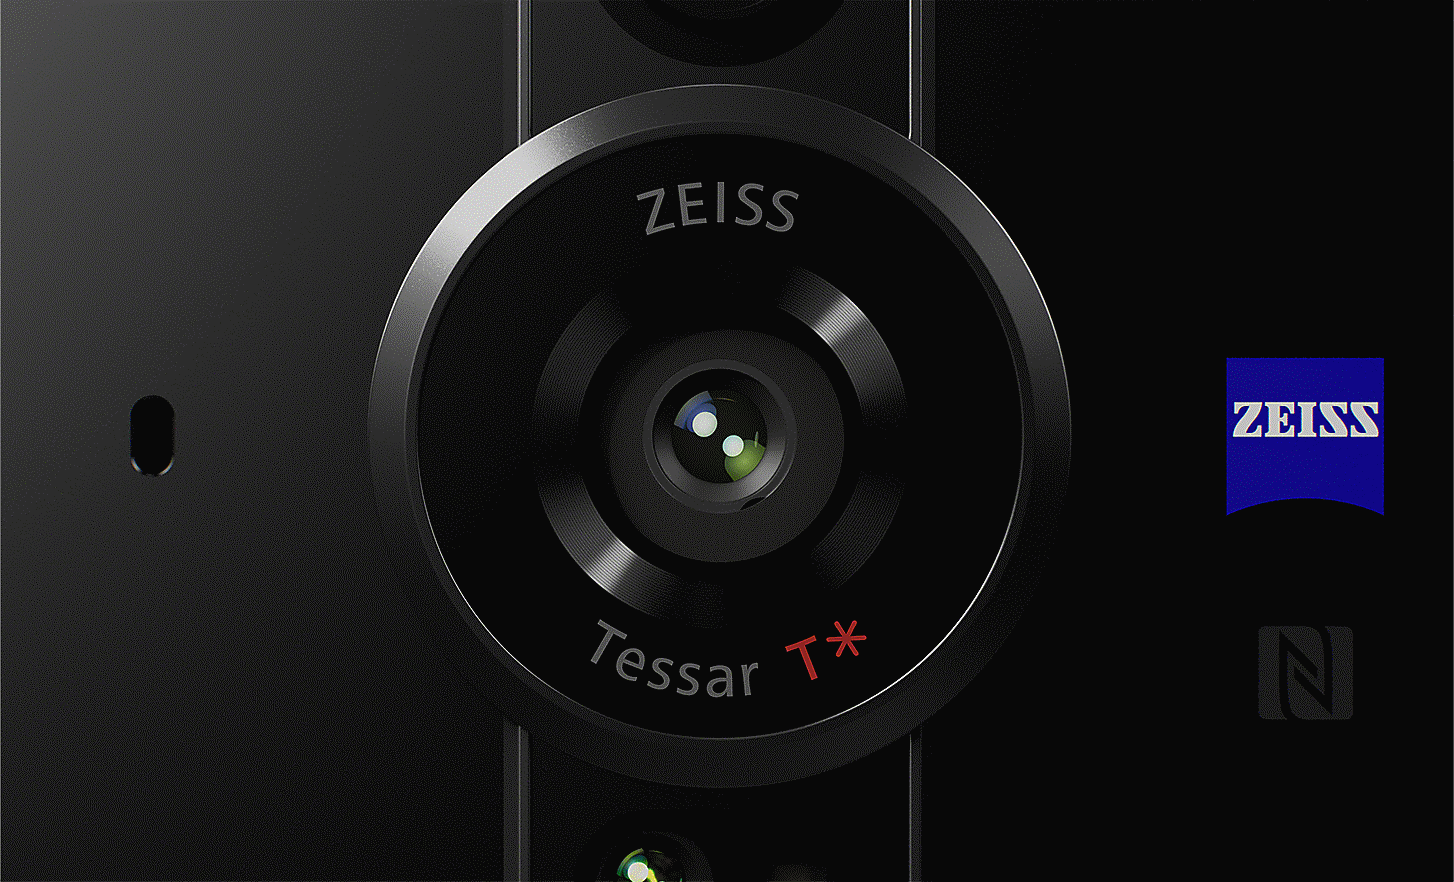 Gros plan sur l’objectif ZEISS Tessar T* avec le logo ZEISS